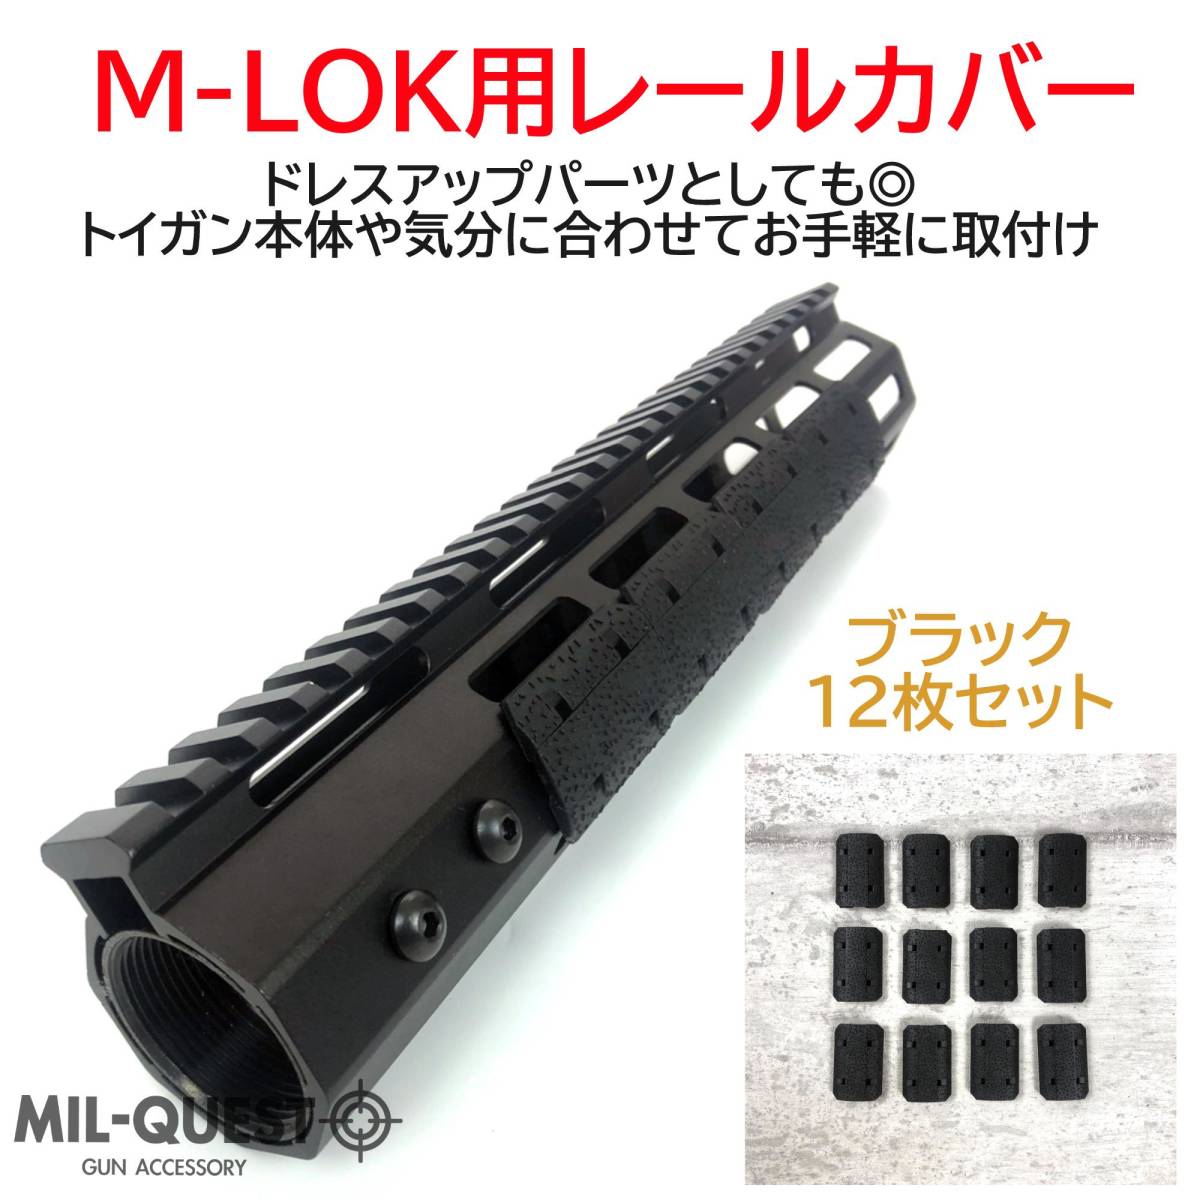 MAGPULタイプ TYPE2 M-LOK専用 レールパネル 12枚セット 樹脂製 ブラック Mロック エムロック MILQUEST ミルクエスト レールカバー パネルの画像2